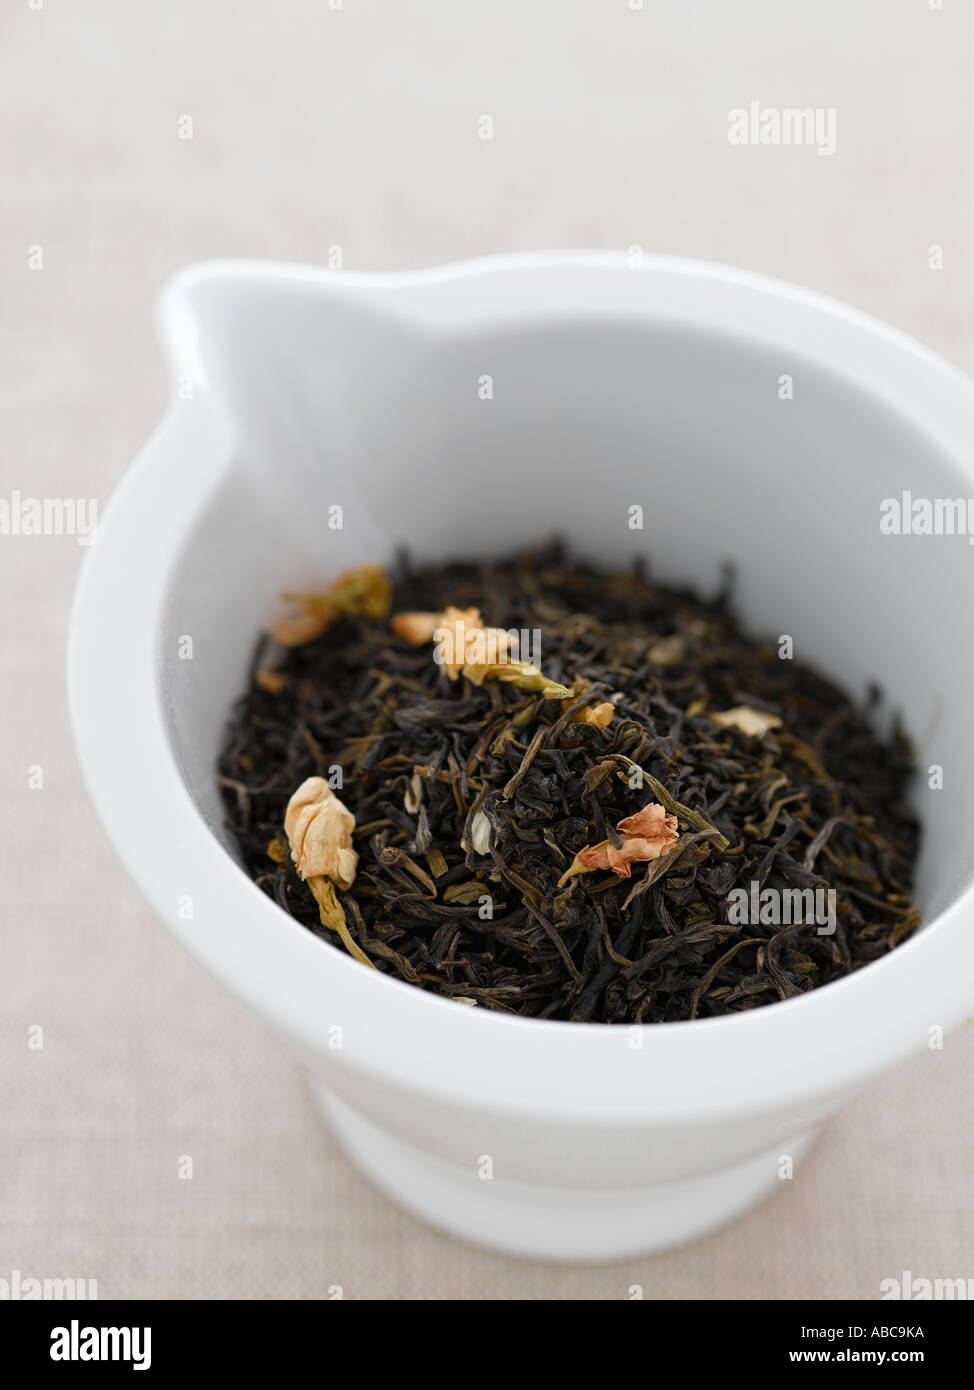 Gelsomino le foglie di tè - fascia alta Hasselblad 61mb di immagine digitale Foto Stock